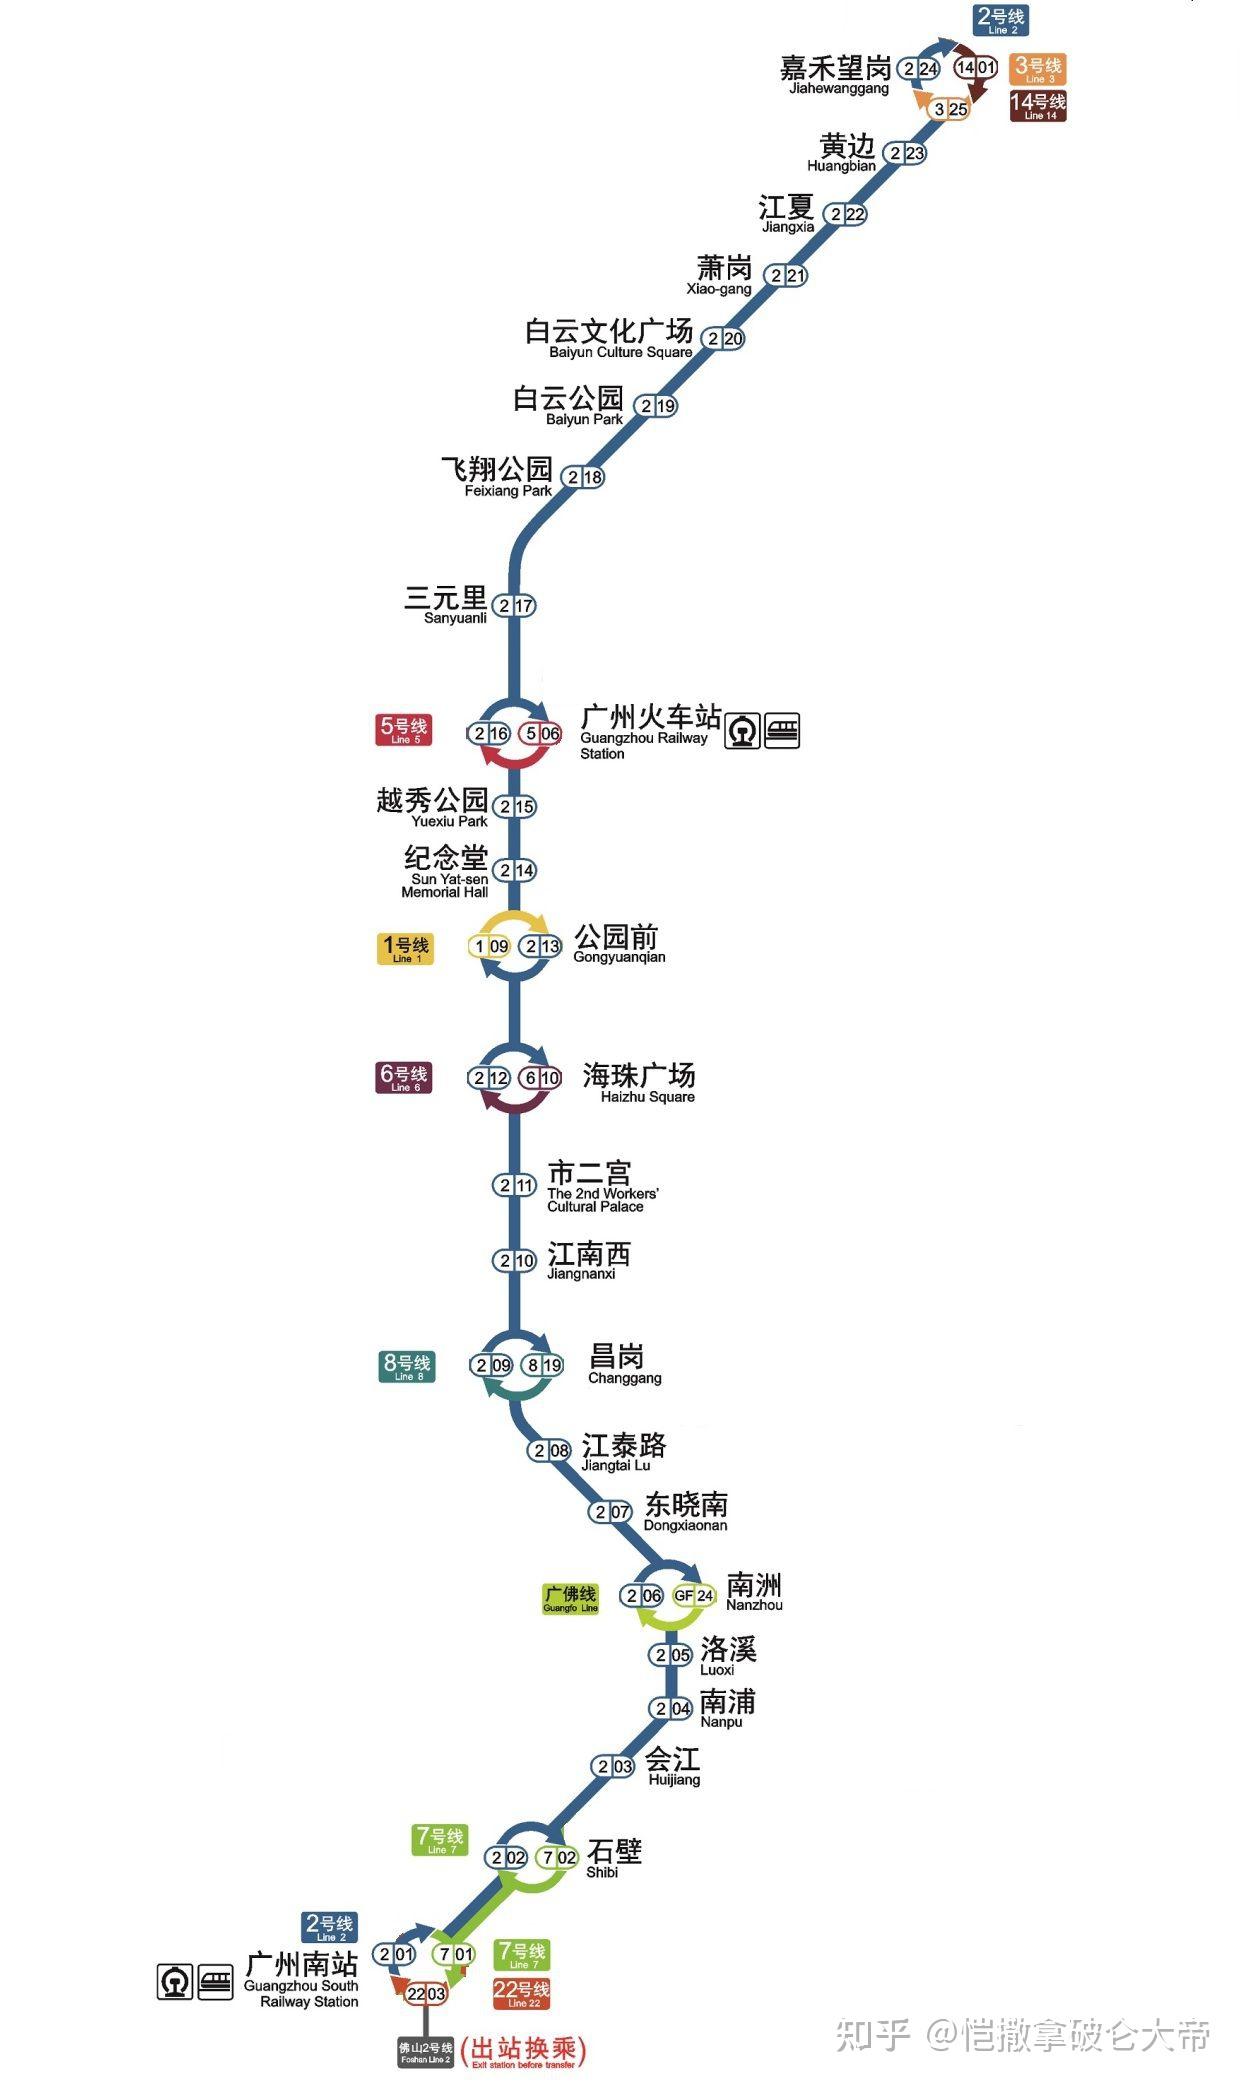 第三期:广州地铁2号线站点介绍